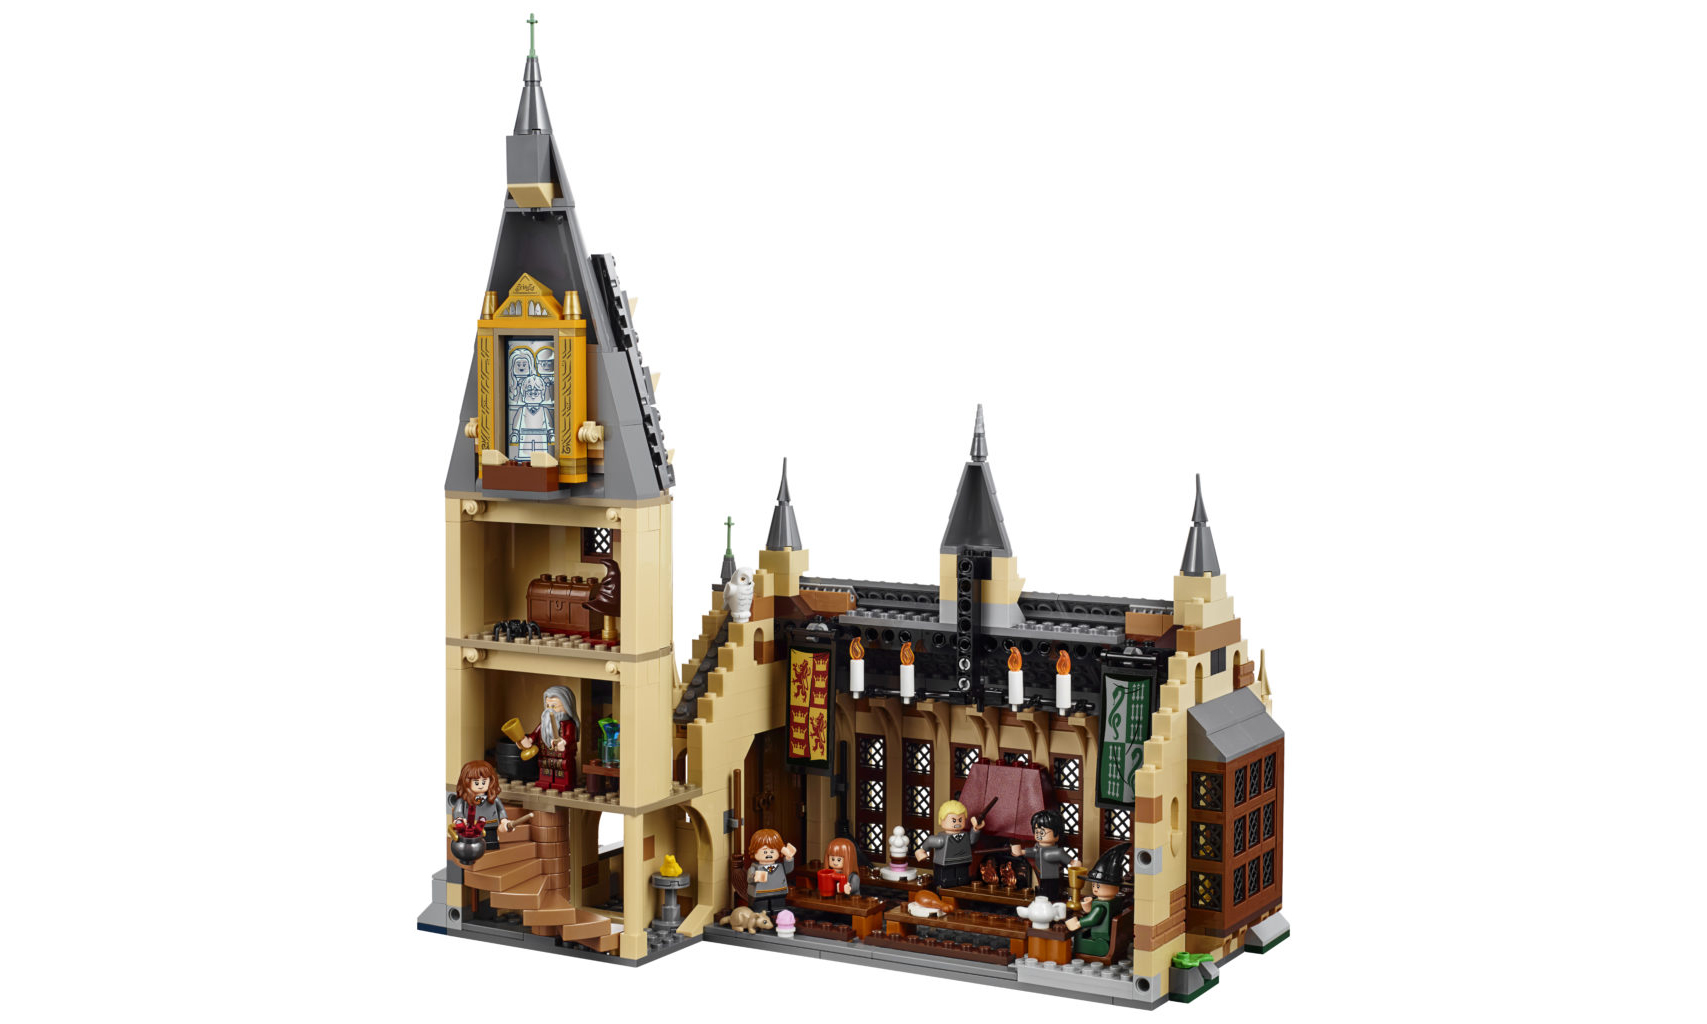 魔法迷必入！LEGO 发布霍格沃茨城堡套装